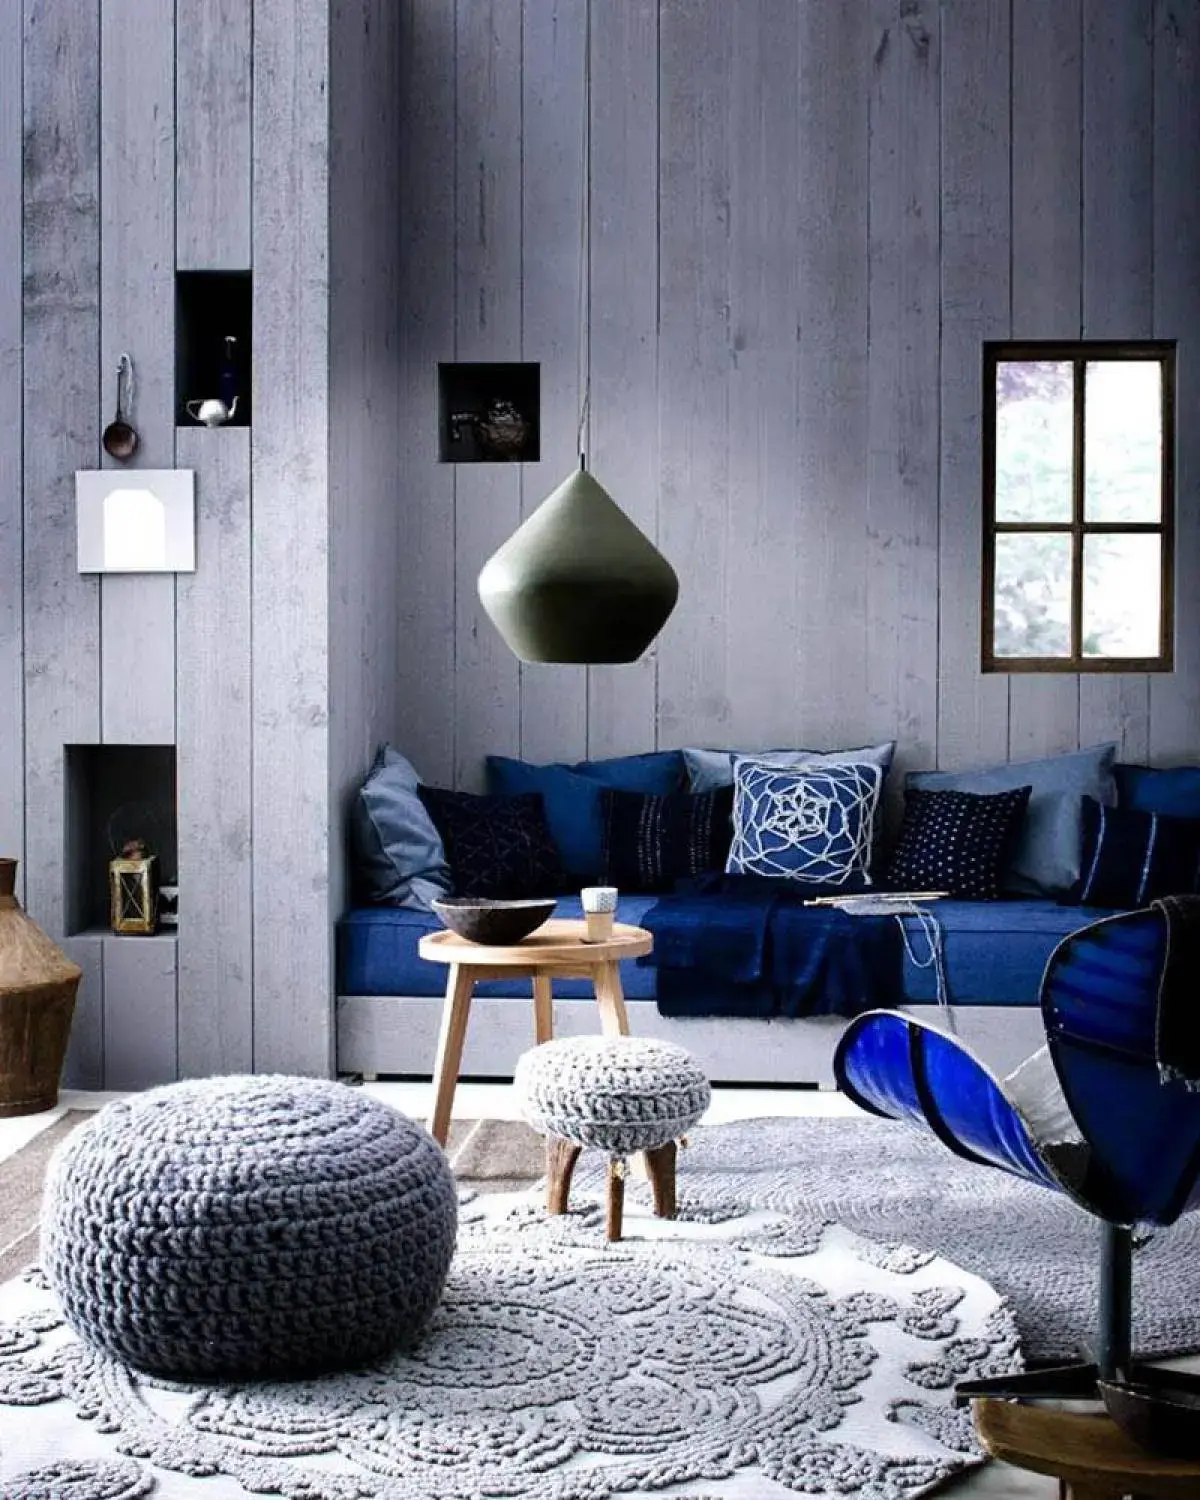 tapete de barbante croche na sala ambiente decorado circular cinzanórdico escandinavo